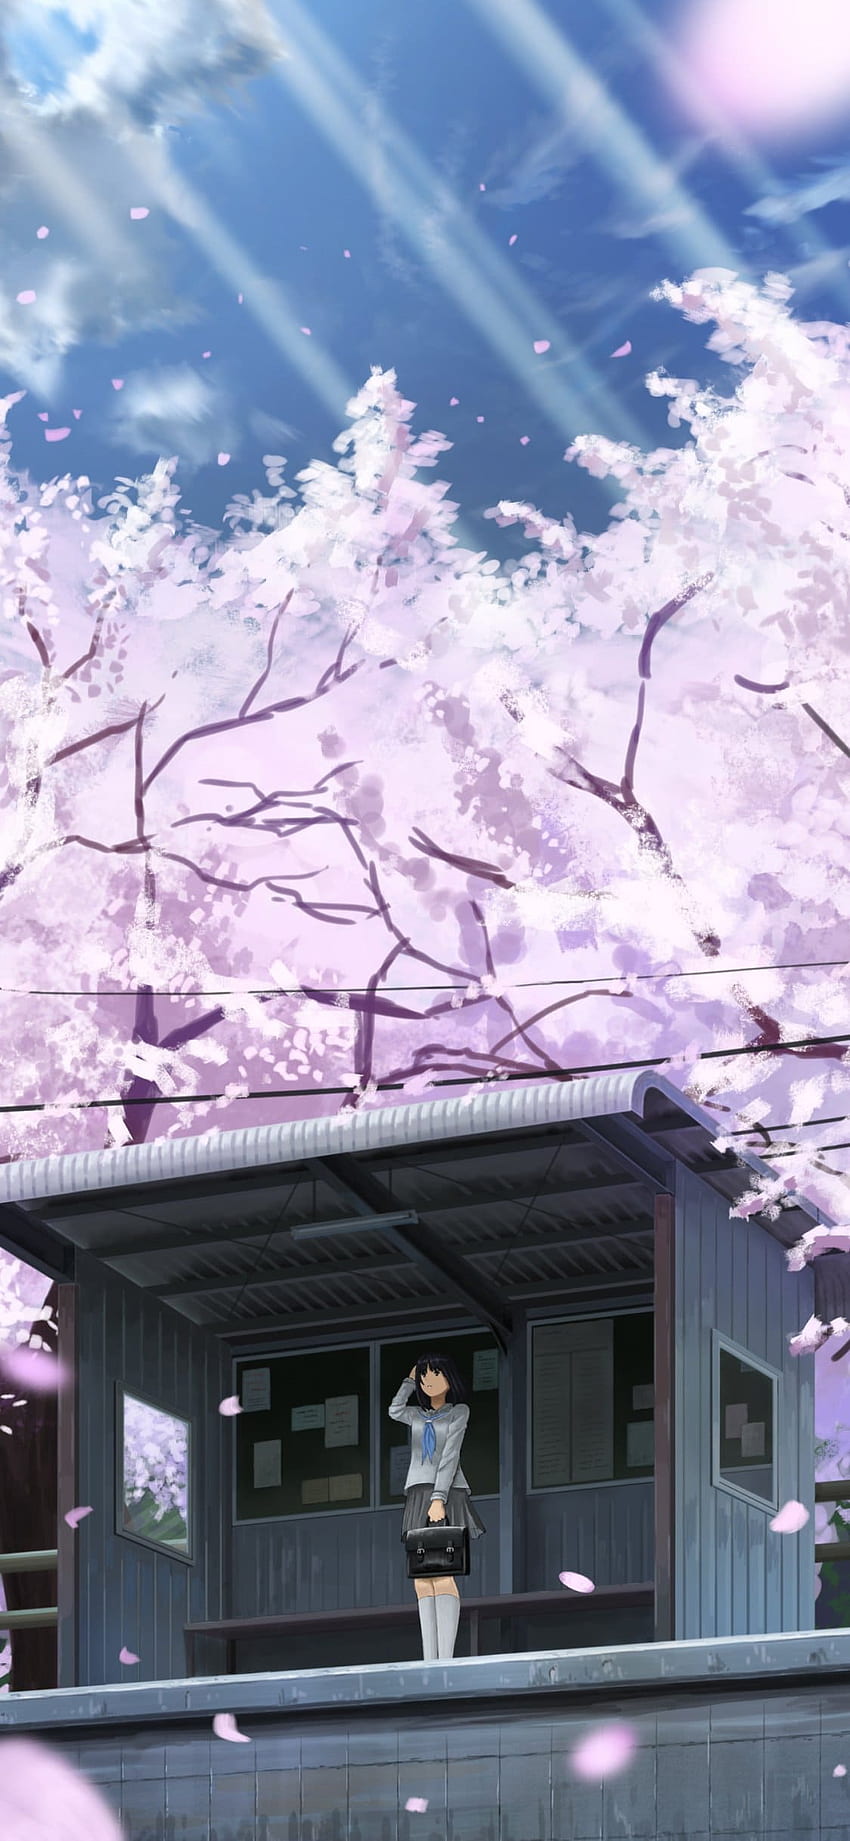 Hoa anh đào là một trong những biểu tượng đẹp nhất của Nhật Bản và cũng là chủ đề của nhiều bộ anime. Những hình ảnh về hoa anh đào anime thường mang lại cho người xem cảm giác tươi mới và gợi nhớ về mùa xuân. Nhấp vào để xem những hình ảnh đẹp nhất về hoa anh đào anime.